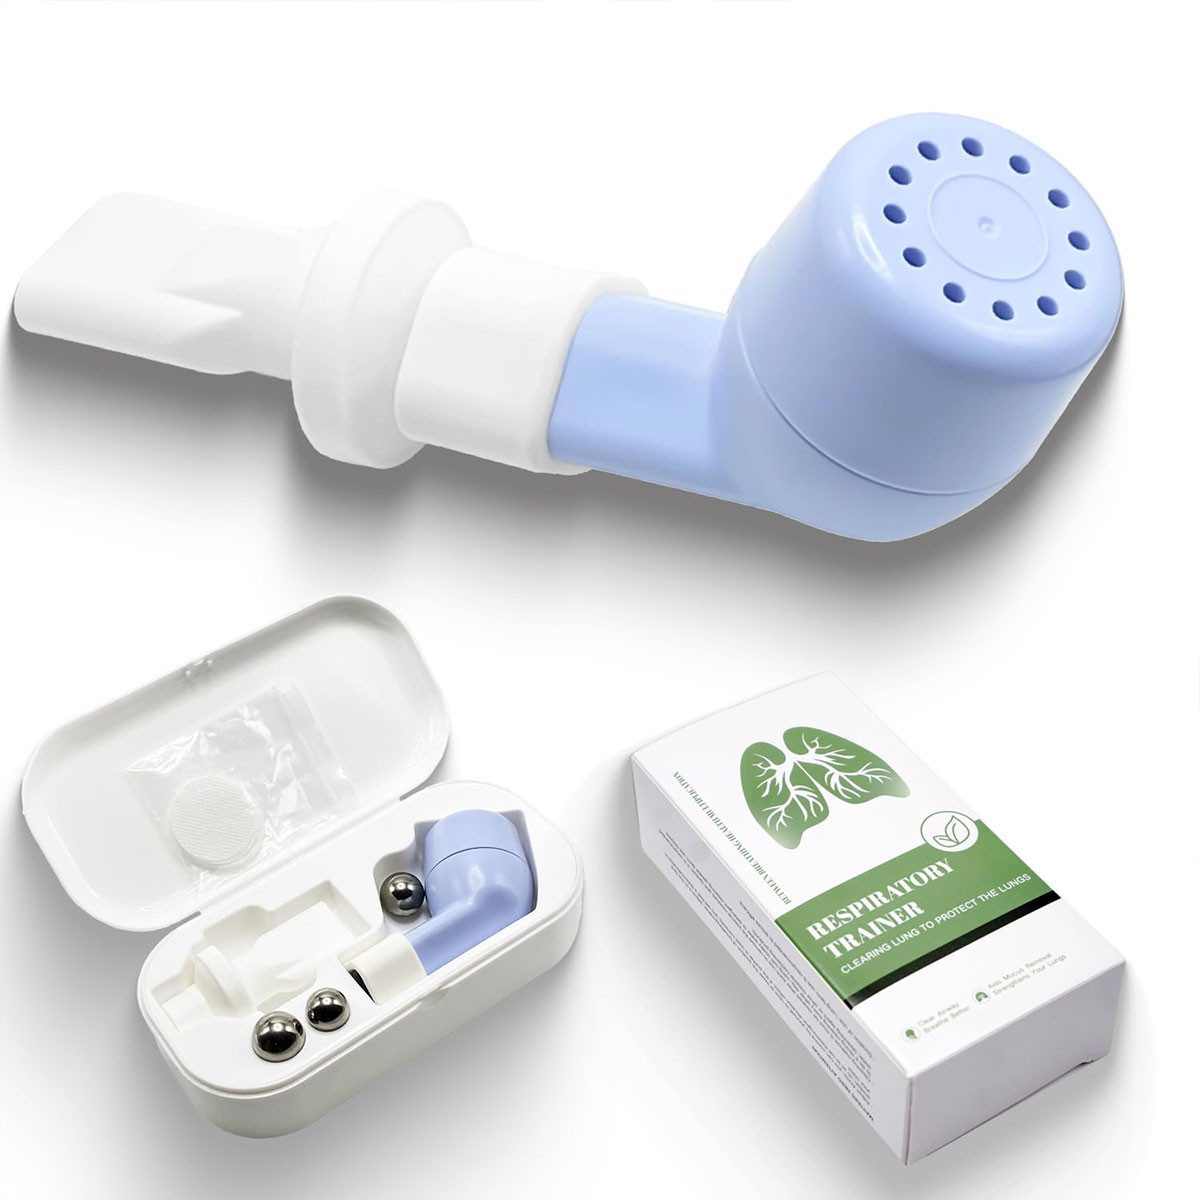 Novzep Inhalator Atemtrainer, tragbare Lungentrainer und Geräte zur Schleimbeseitigung